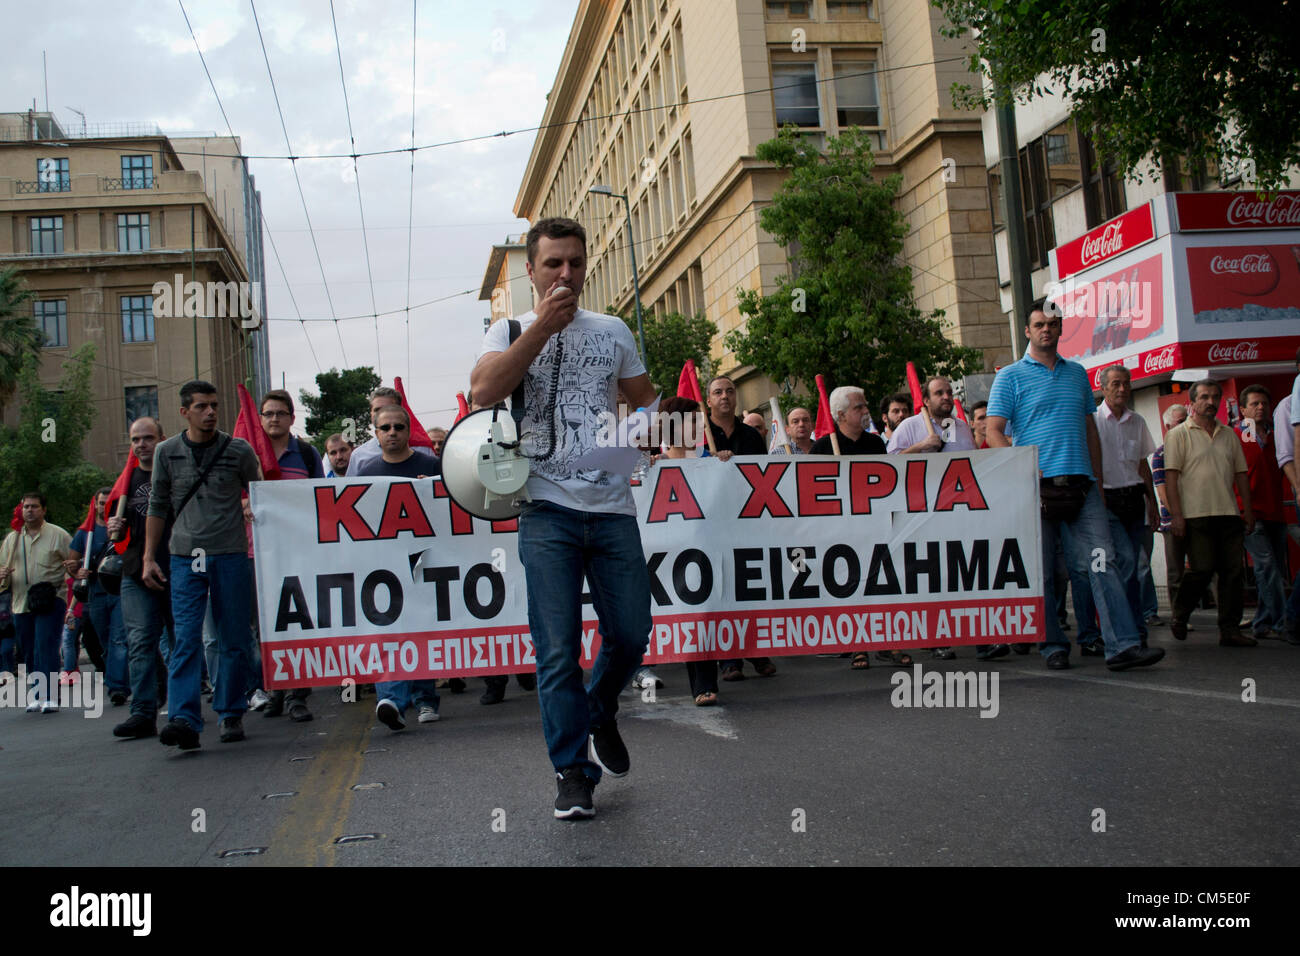 Un hombre gritando consignas en el megáfono mientras los manifestantes marcharán en contra de la austeridad y los recortes presupuestarios. Foto de stock